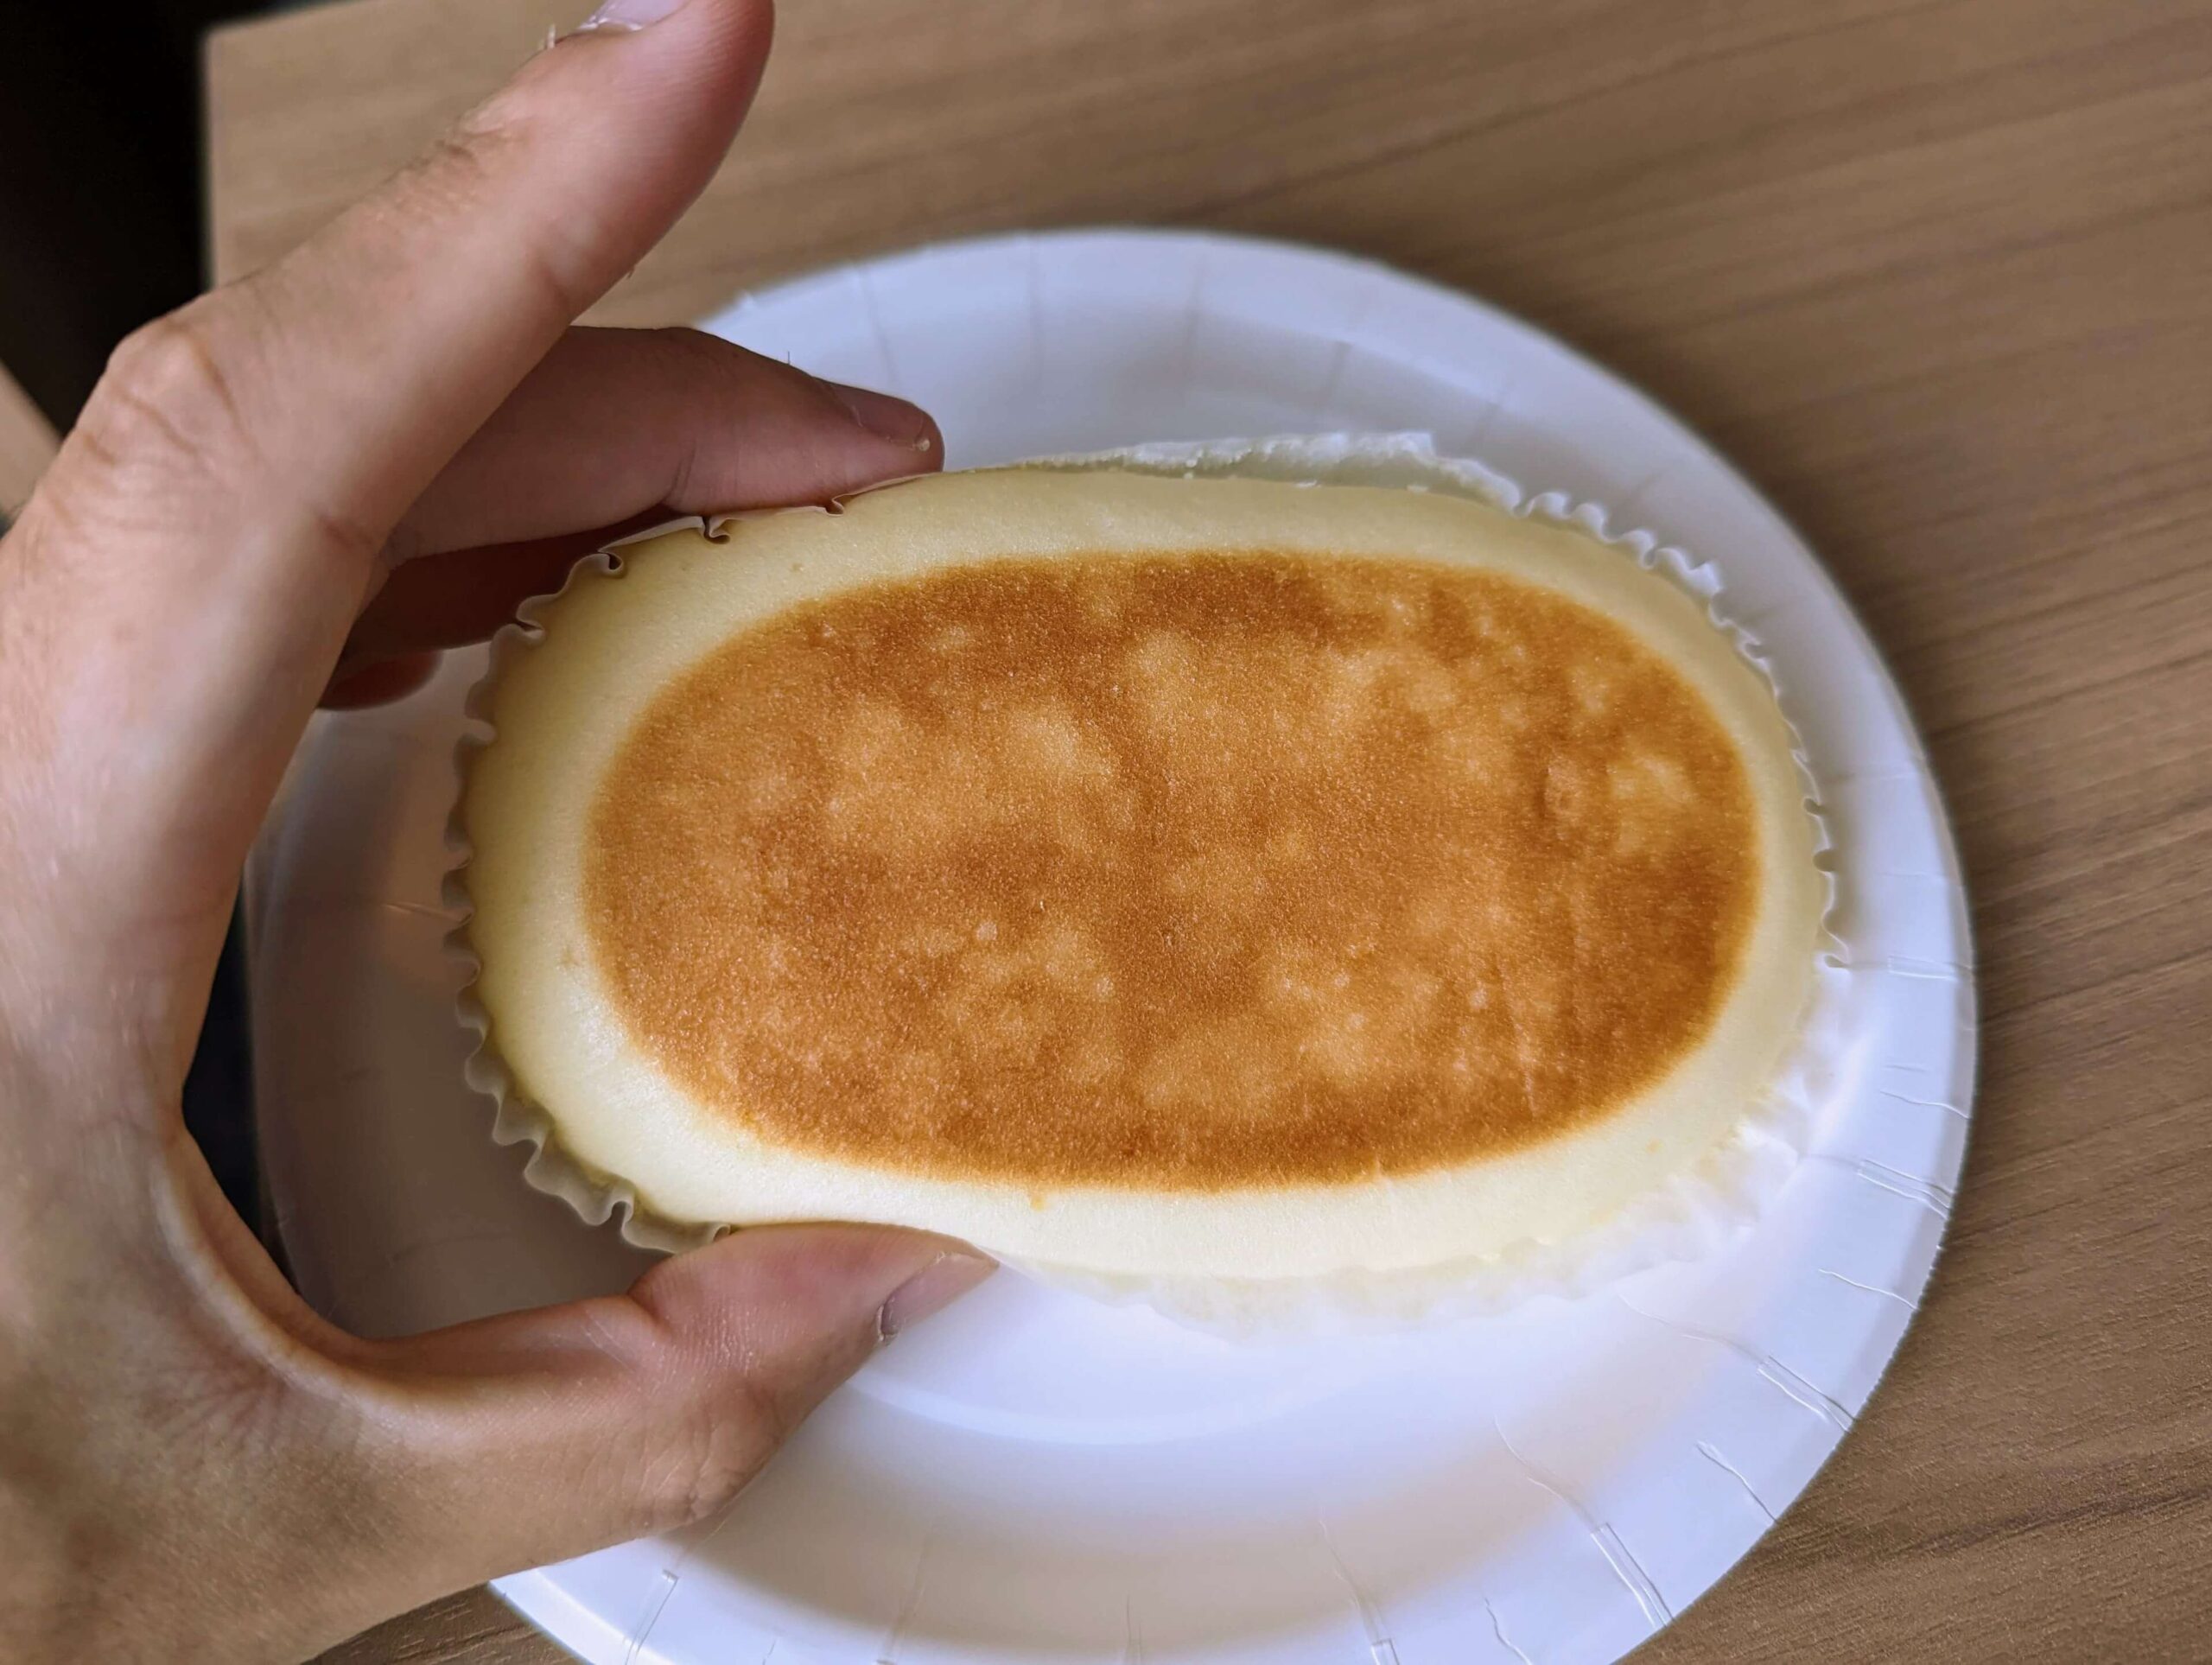 日糧製パン「チーズ蒸しパン」 (7)